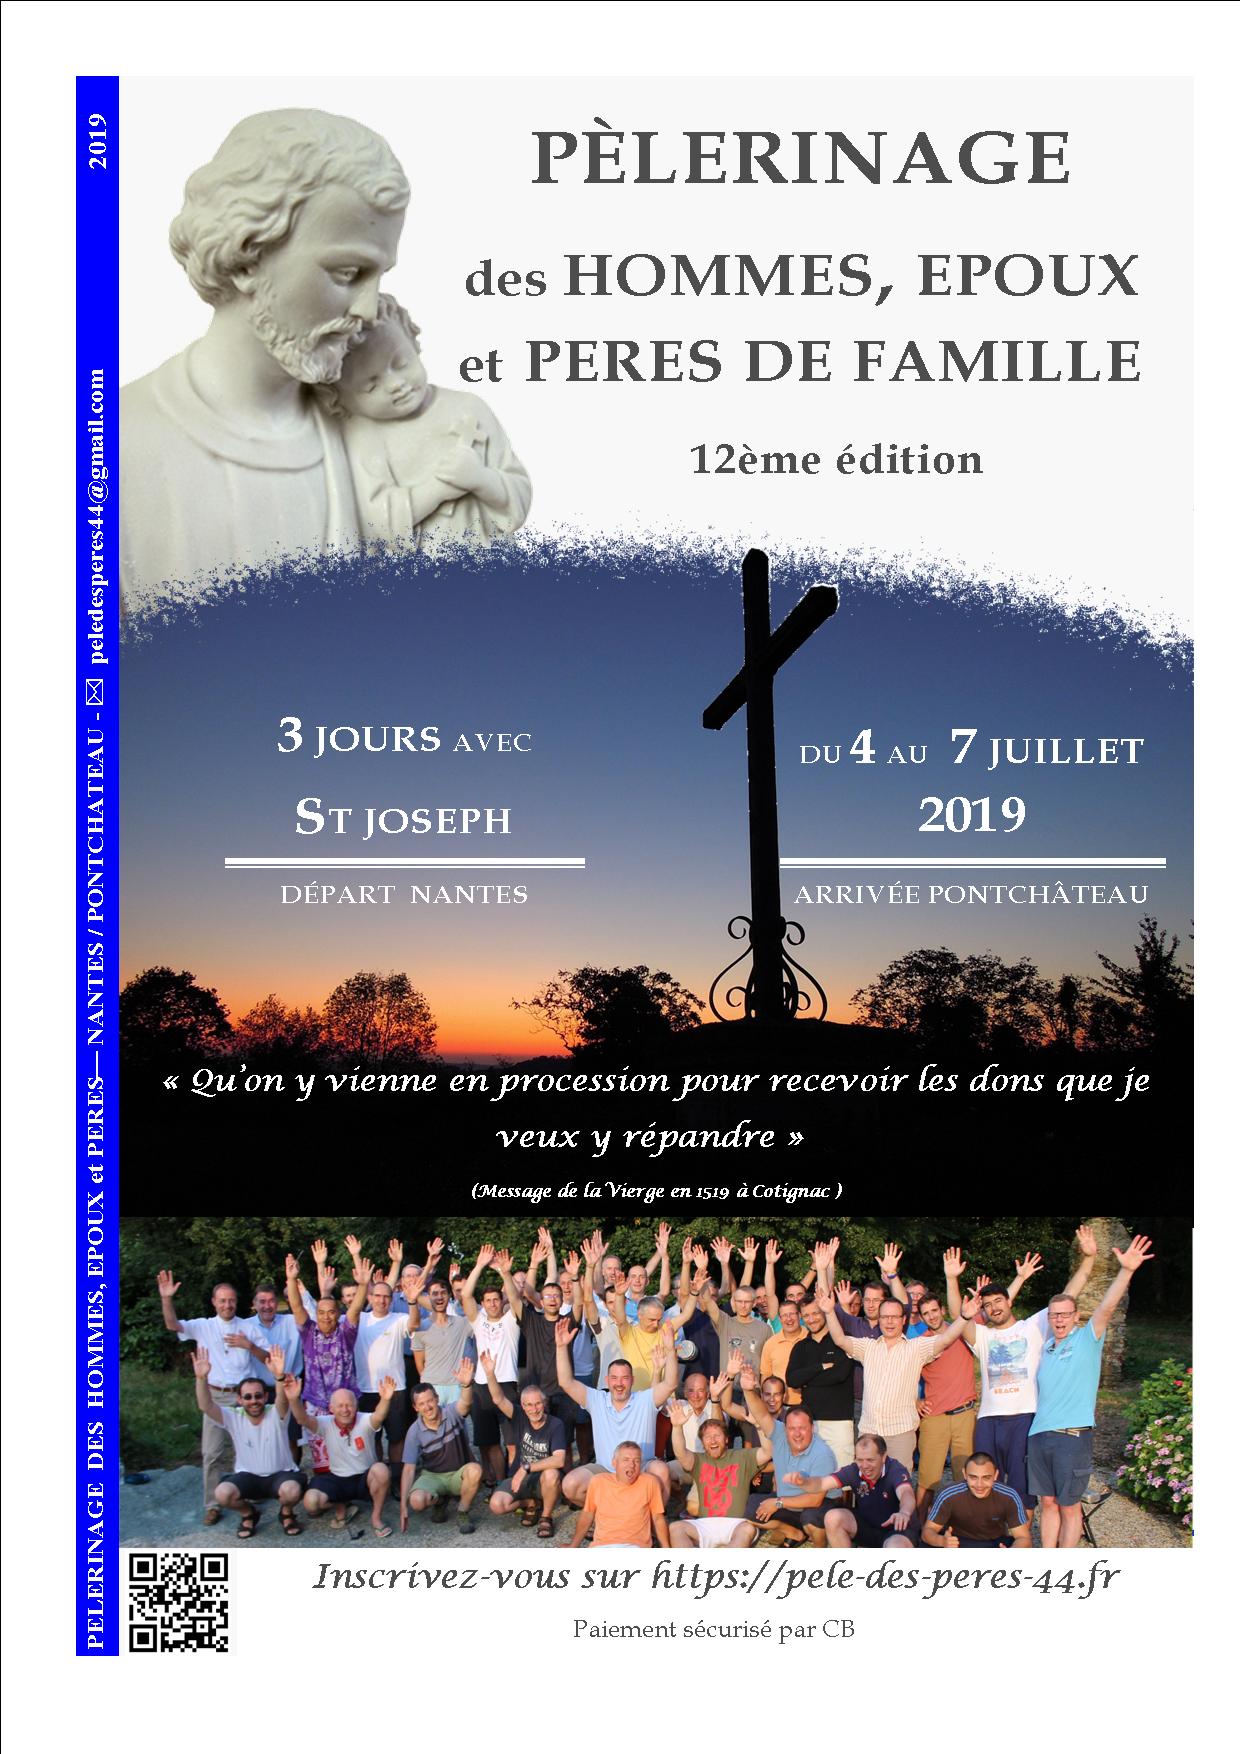 Pèlerinage des Pères de Famille Loire Atlantique du 4 au 7 juillet 2019 de Nantes (44) à Pontchâteau (44)